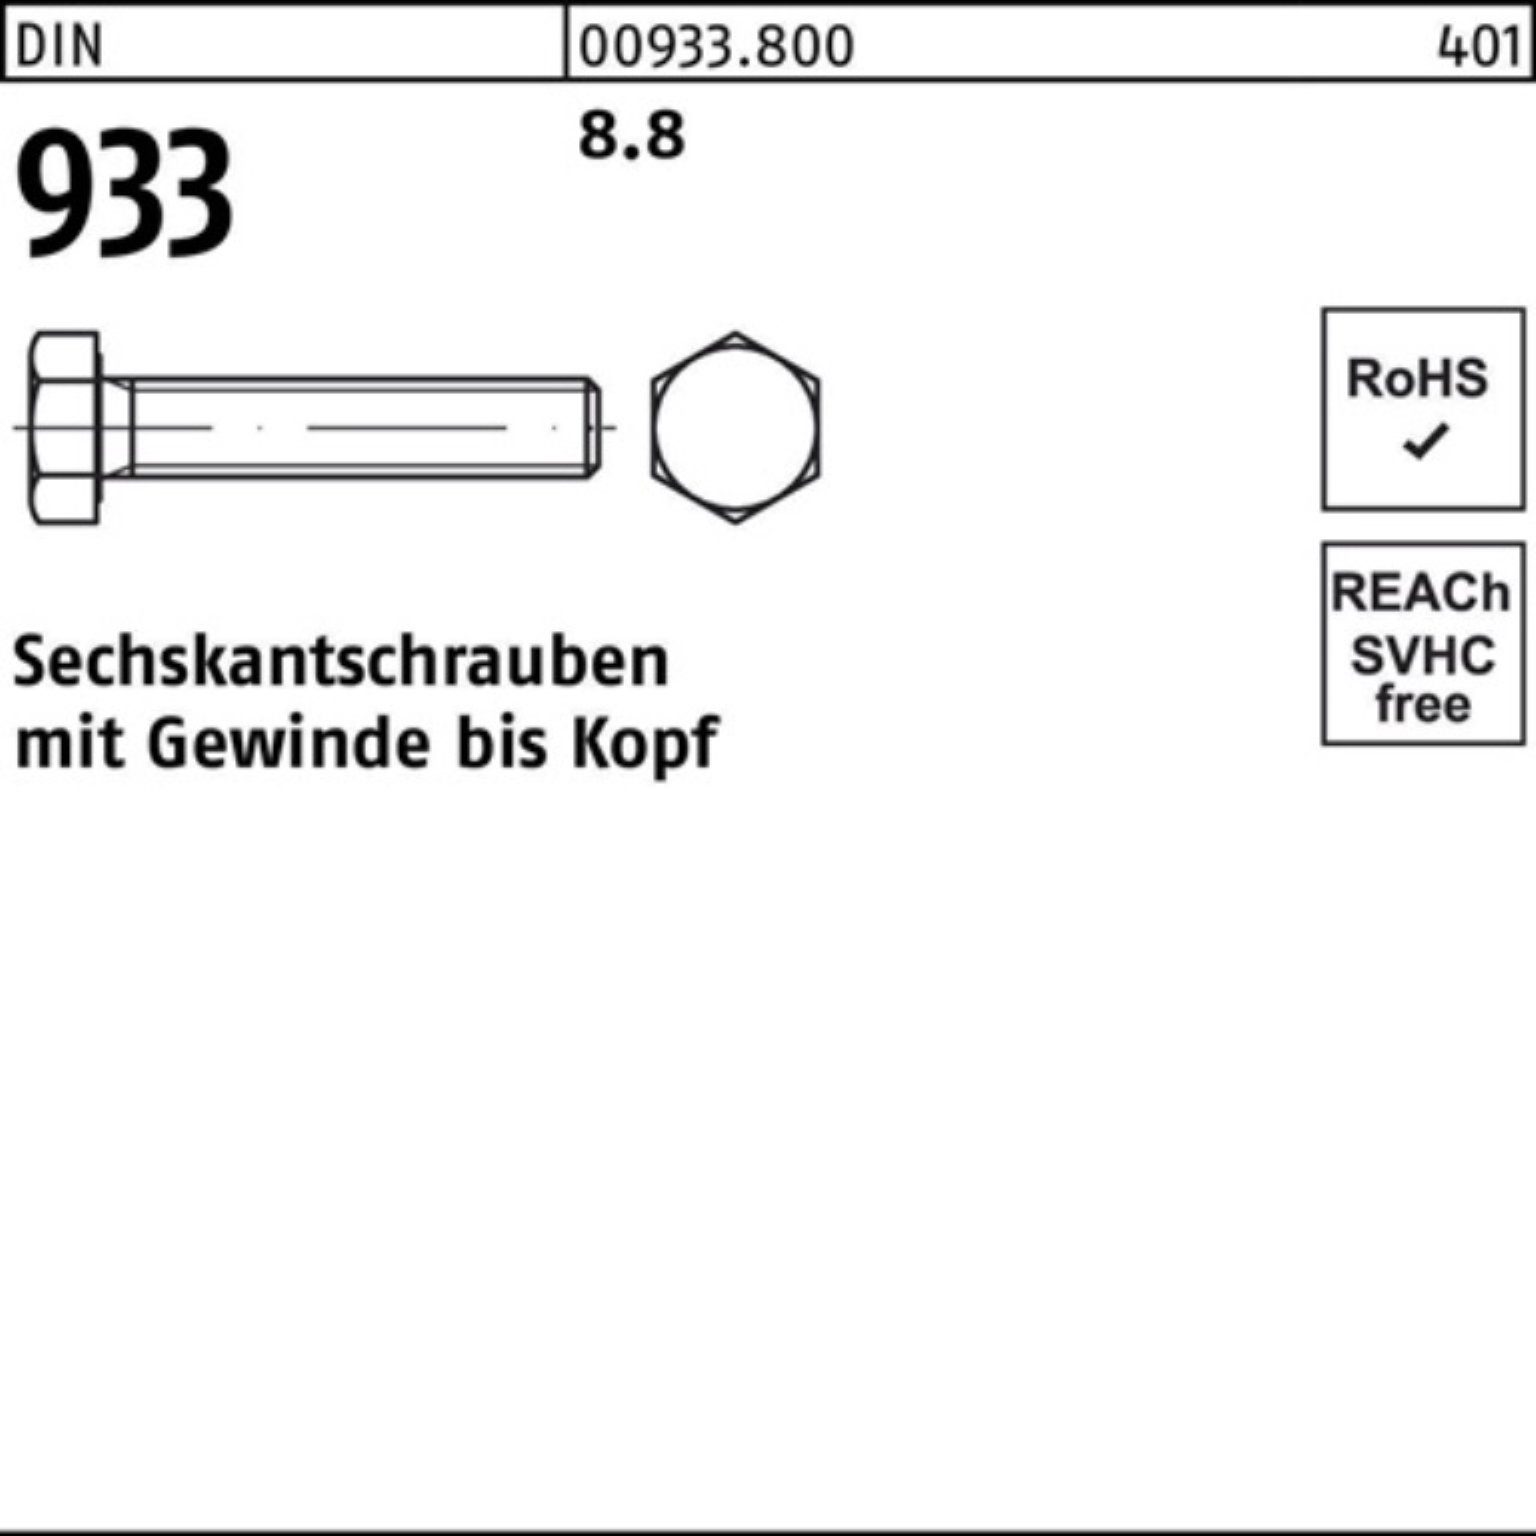 Pack Sechskantschraube Reyher 933 75 DIN VG 8.8 200er 933 200 DIN Sechskantschraube M8x Stück